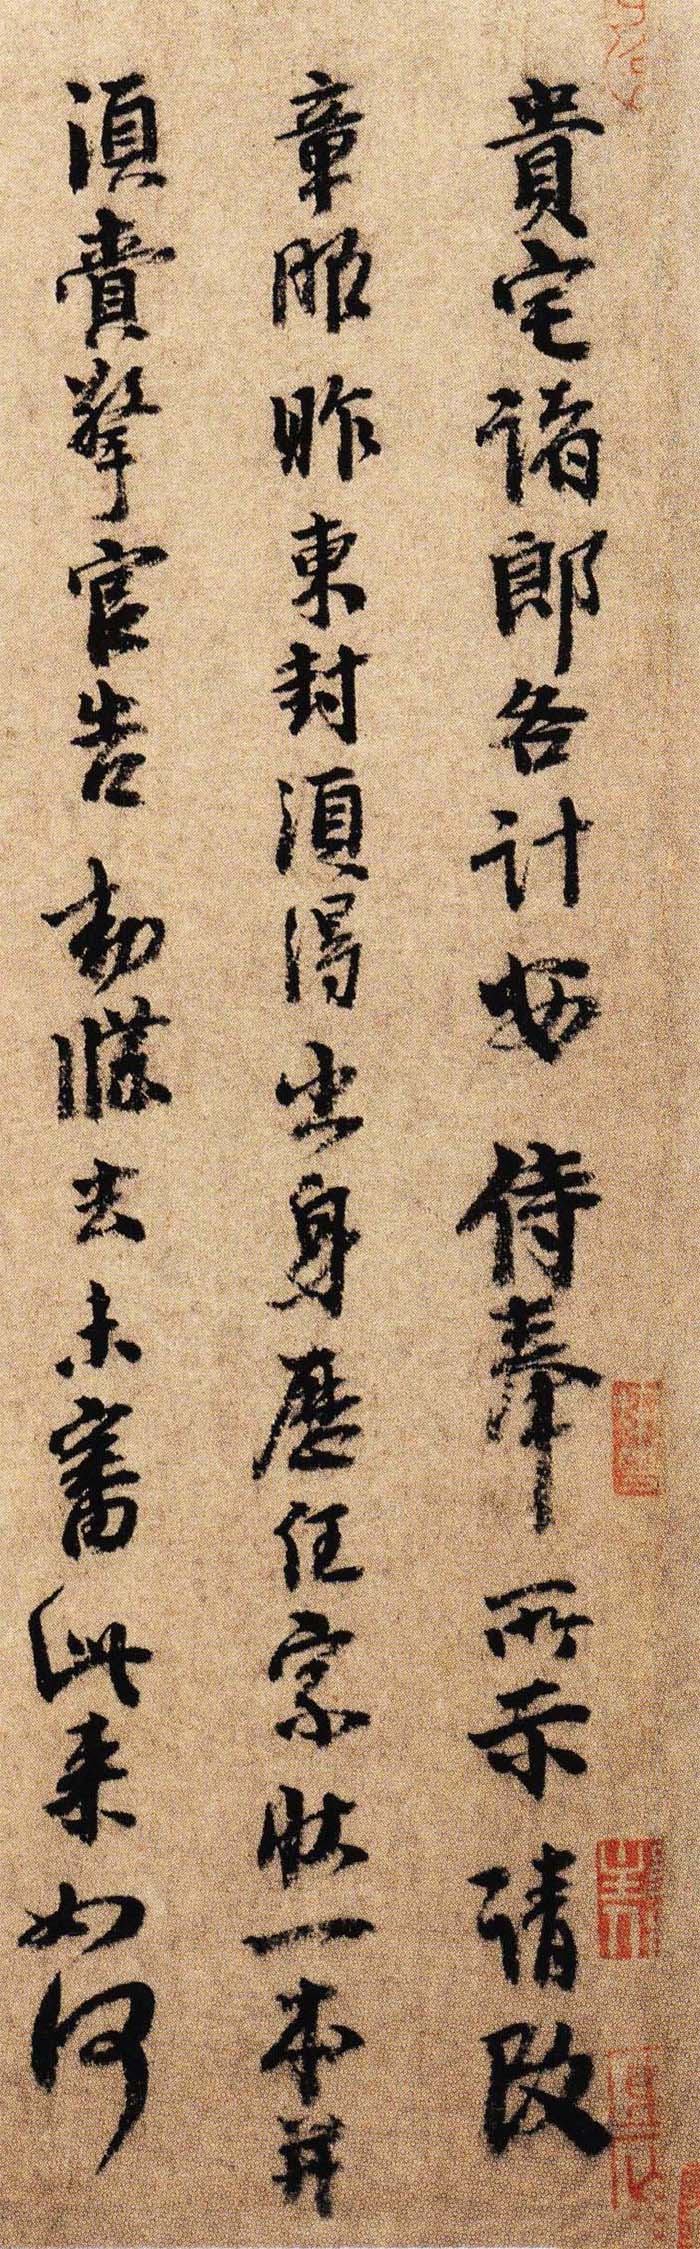 李建中行书《贵宅帖》-北京故宫博物院藏(图2)